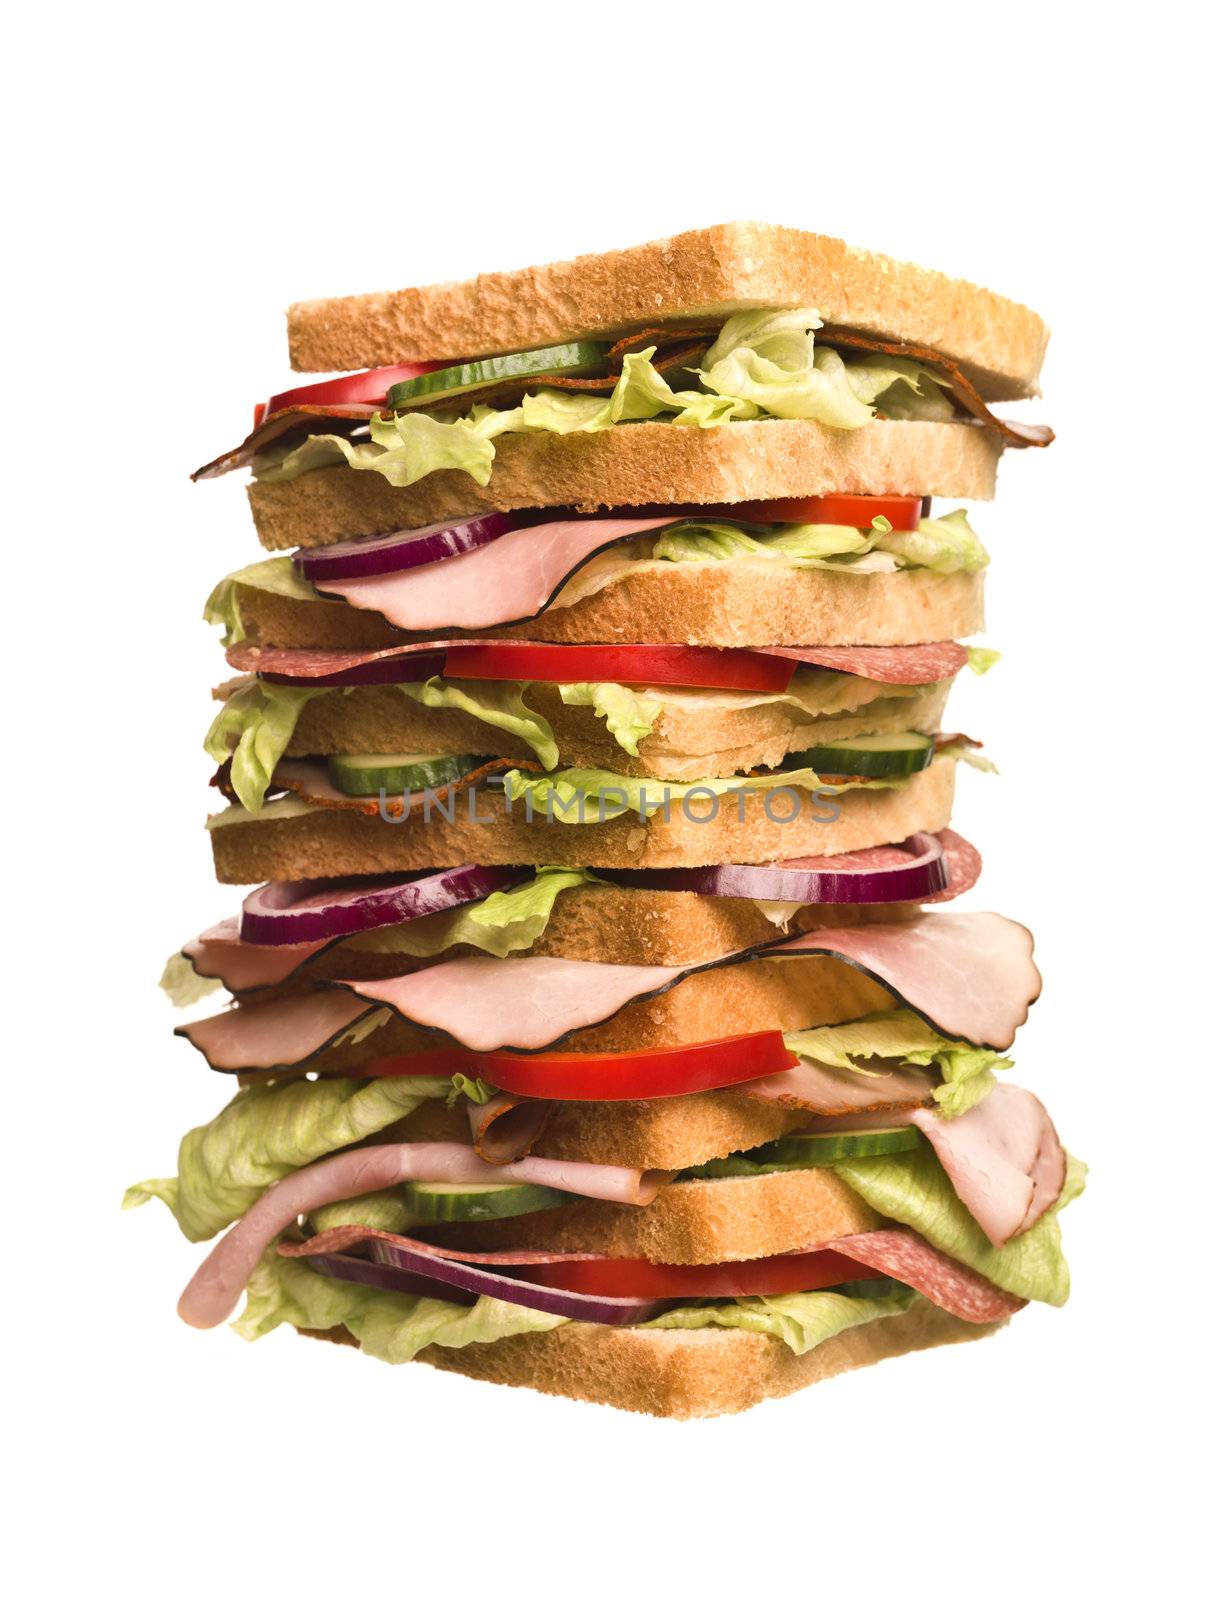 Oversized sandwich isolated on white background